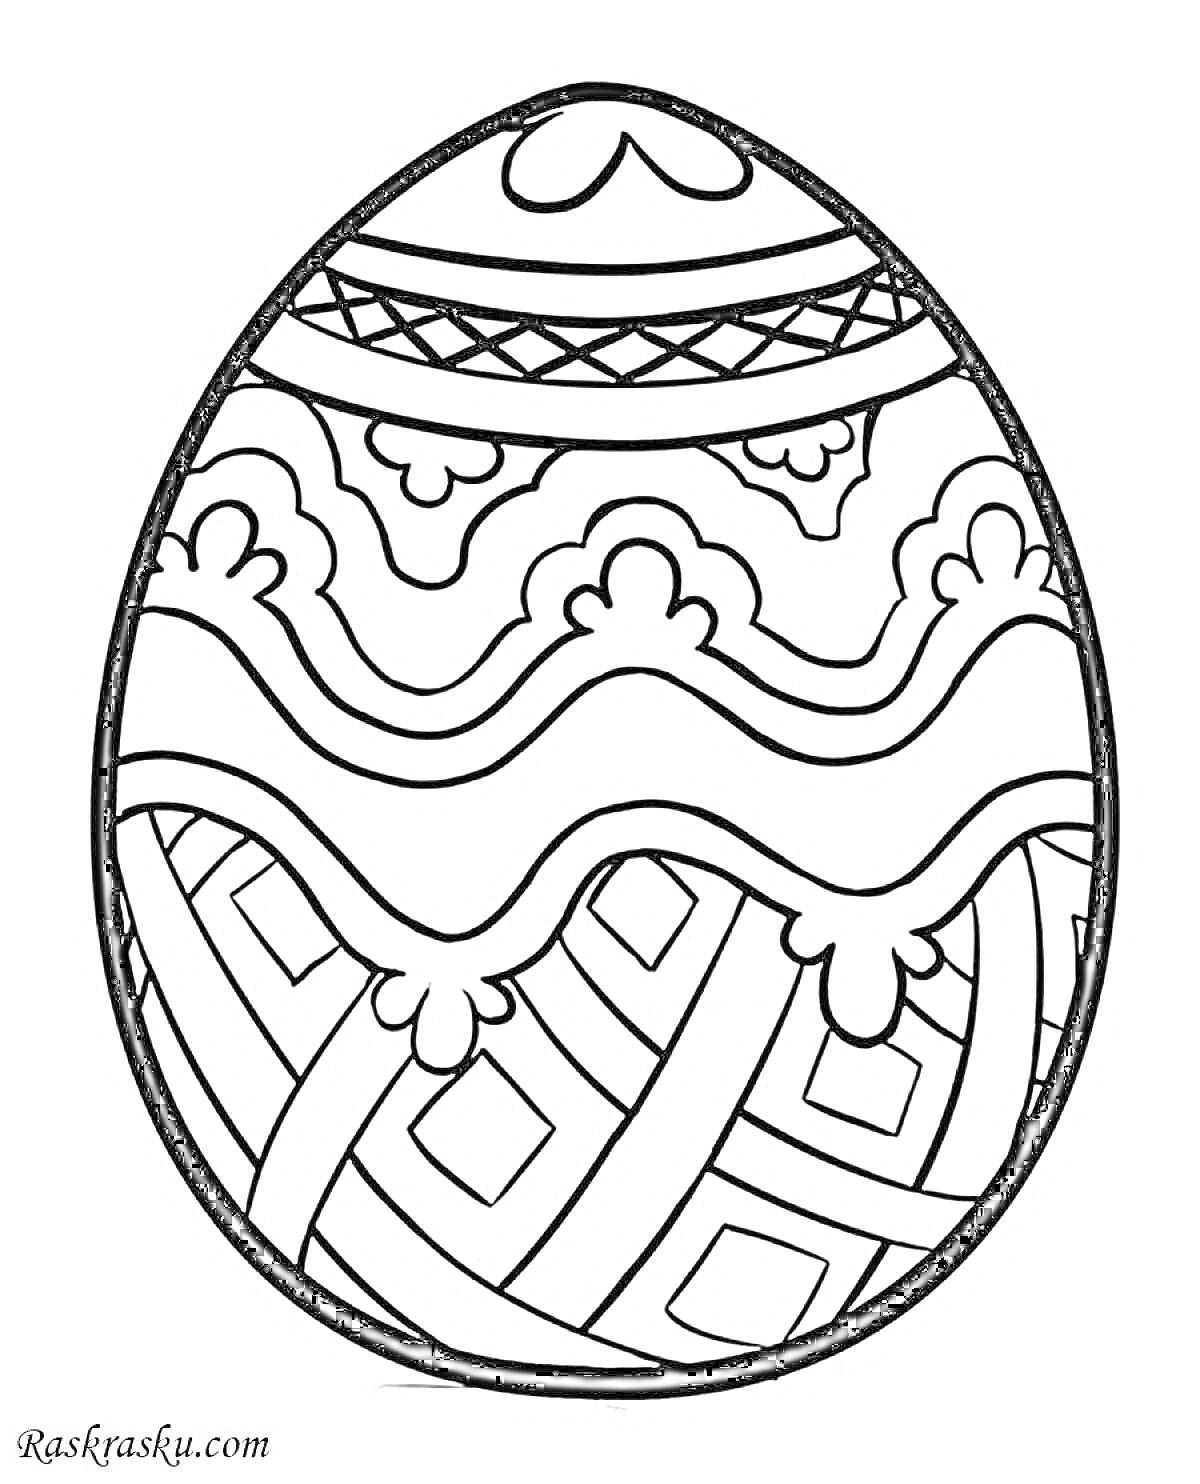 На раскраске изображено: Узоры, Волны, Геометрия, Пасха, Яйца, Лента, Пасхальные яйца